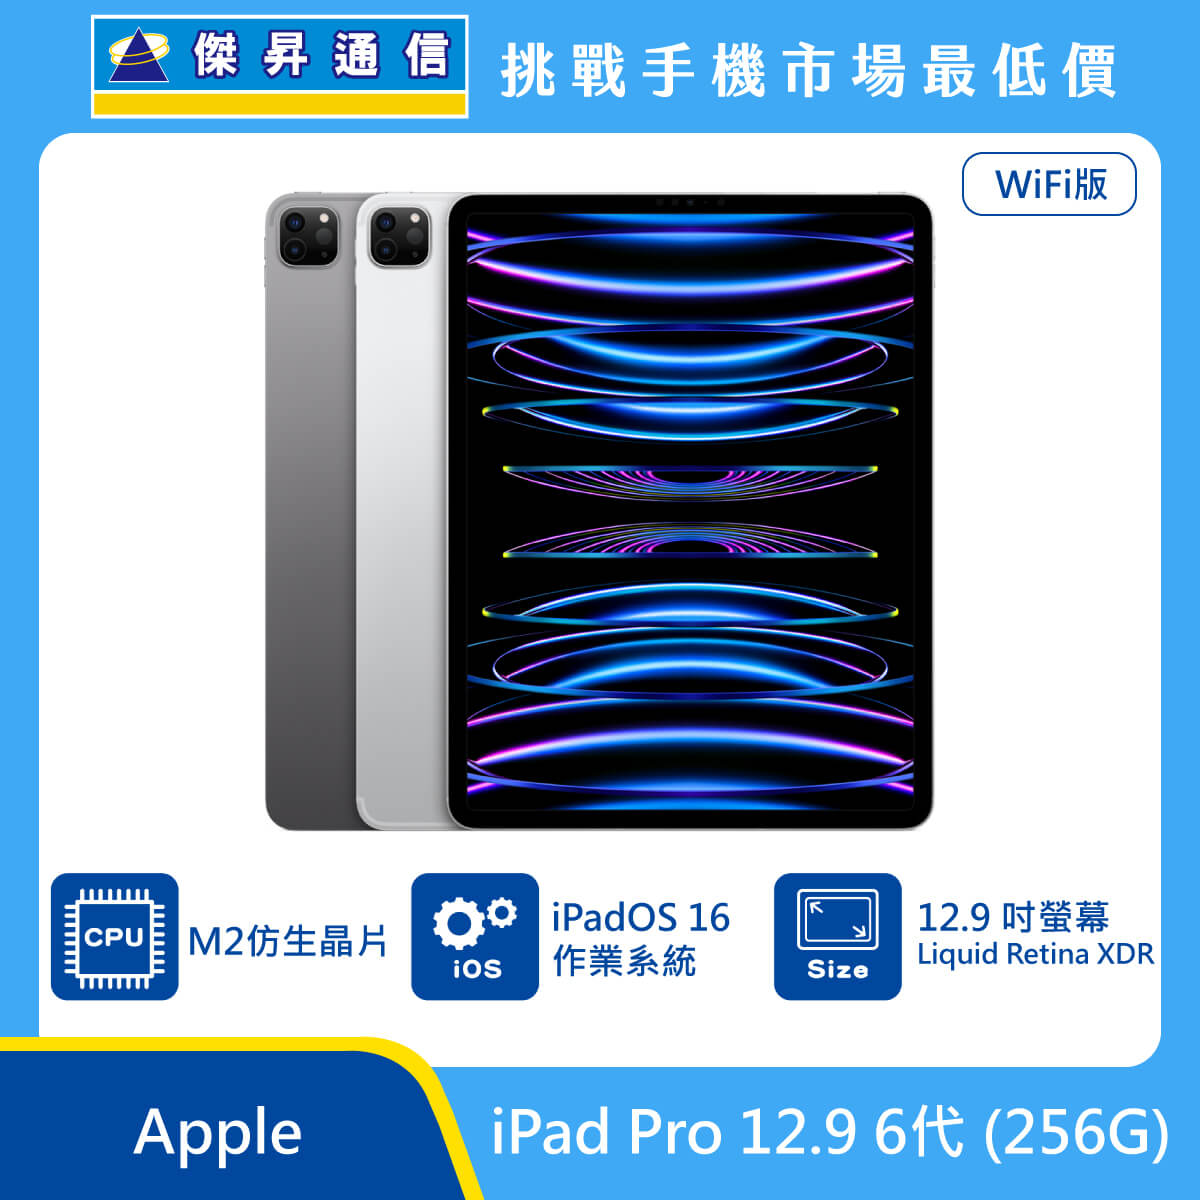 Apple 平板 iPad Pro 12.9 6代 Wi-Fi (256G)